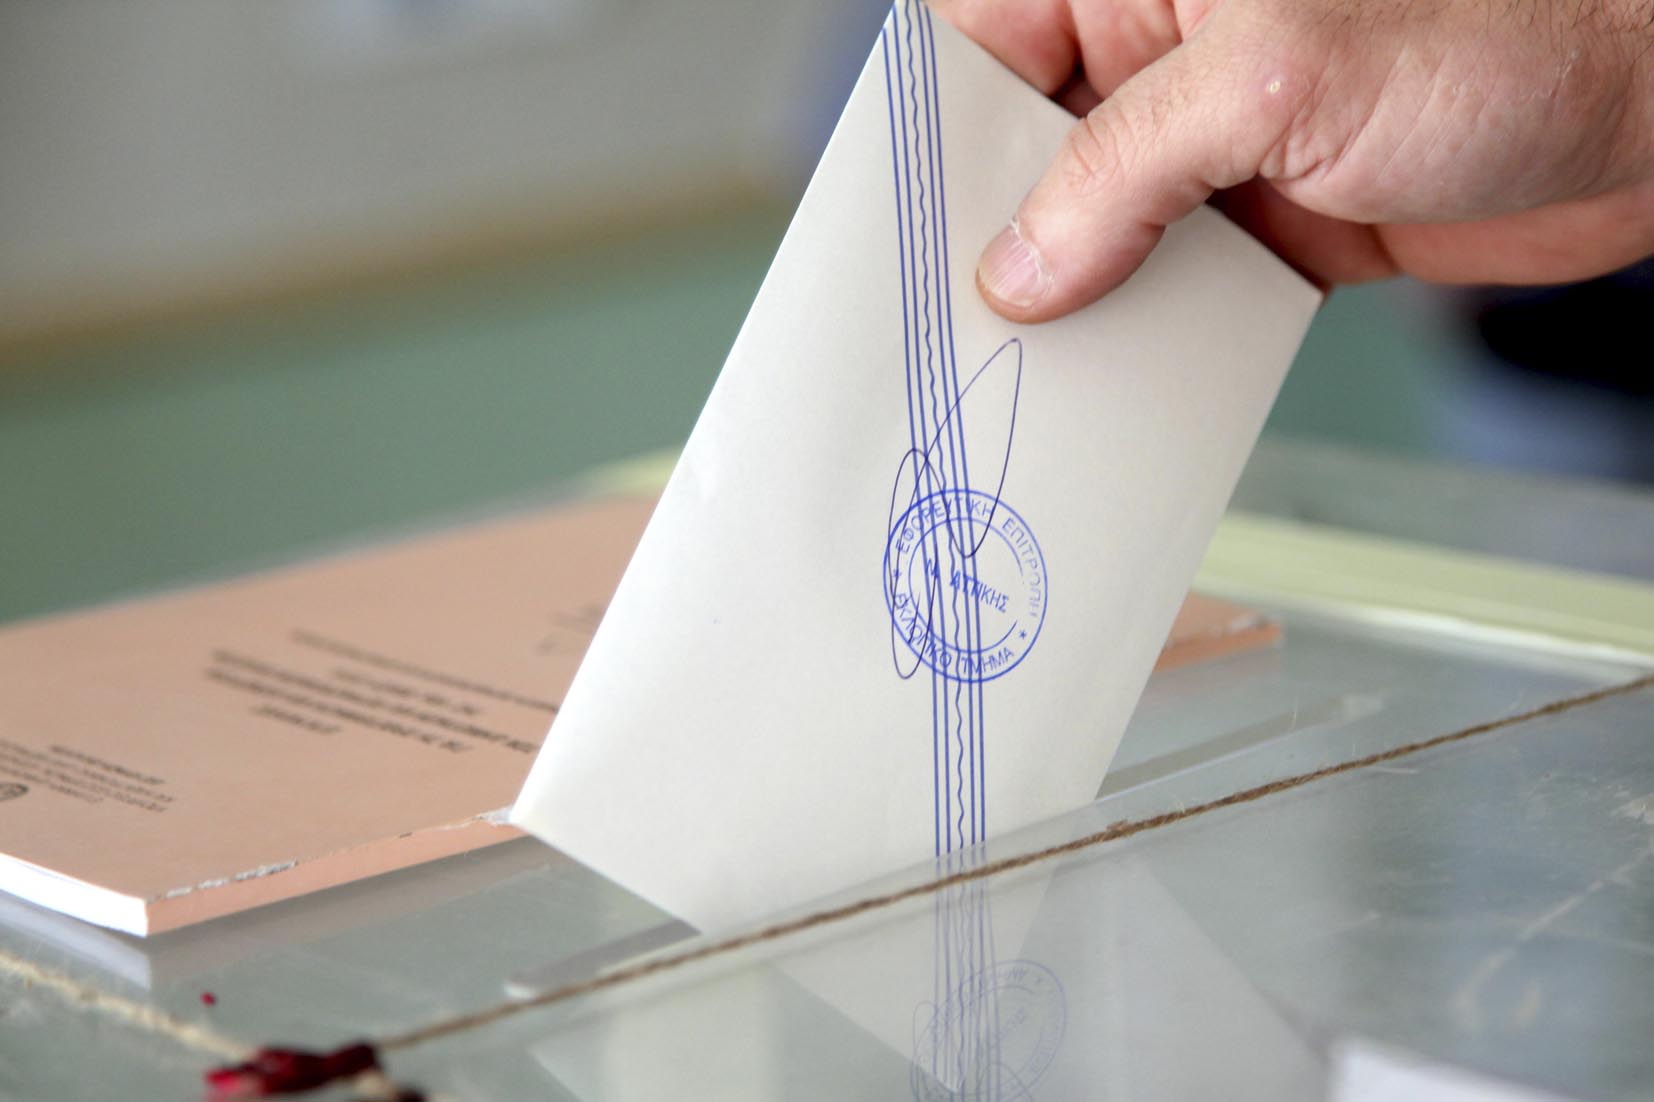 Αυτοδιοικητικές εκλογές: Στο 32,1% η συμμετοχή έως τις 14:30